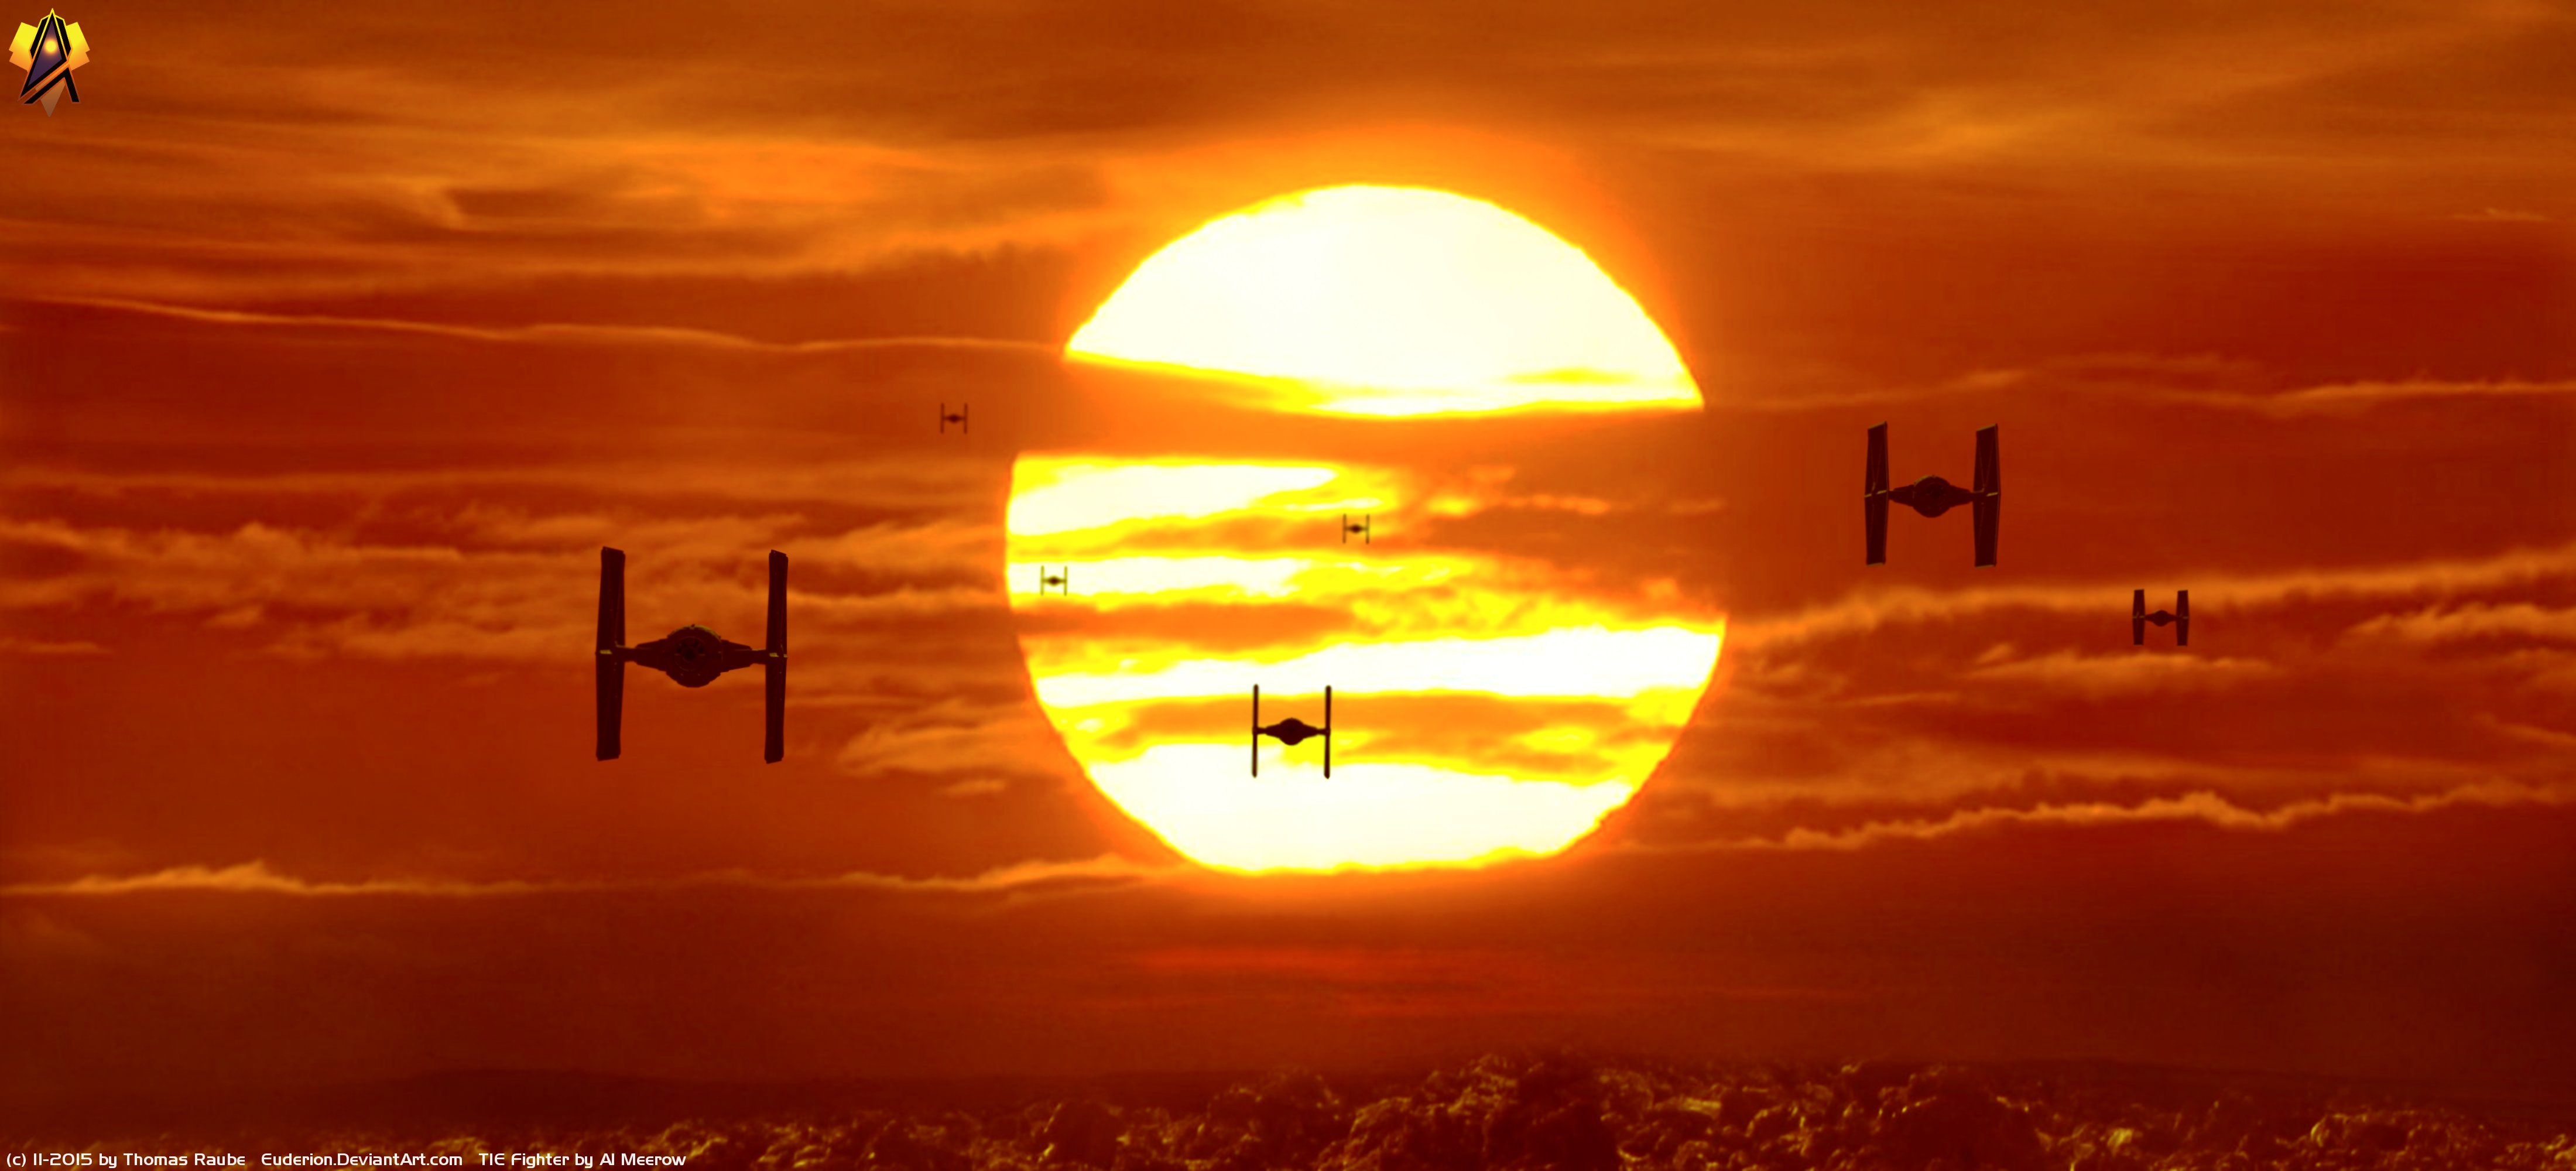  Star Wars Movie Star Wars Episode VII The Force Awakens